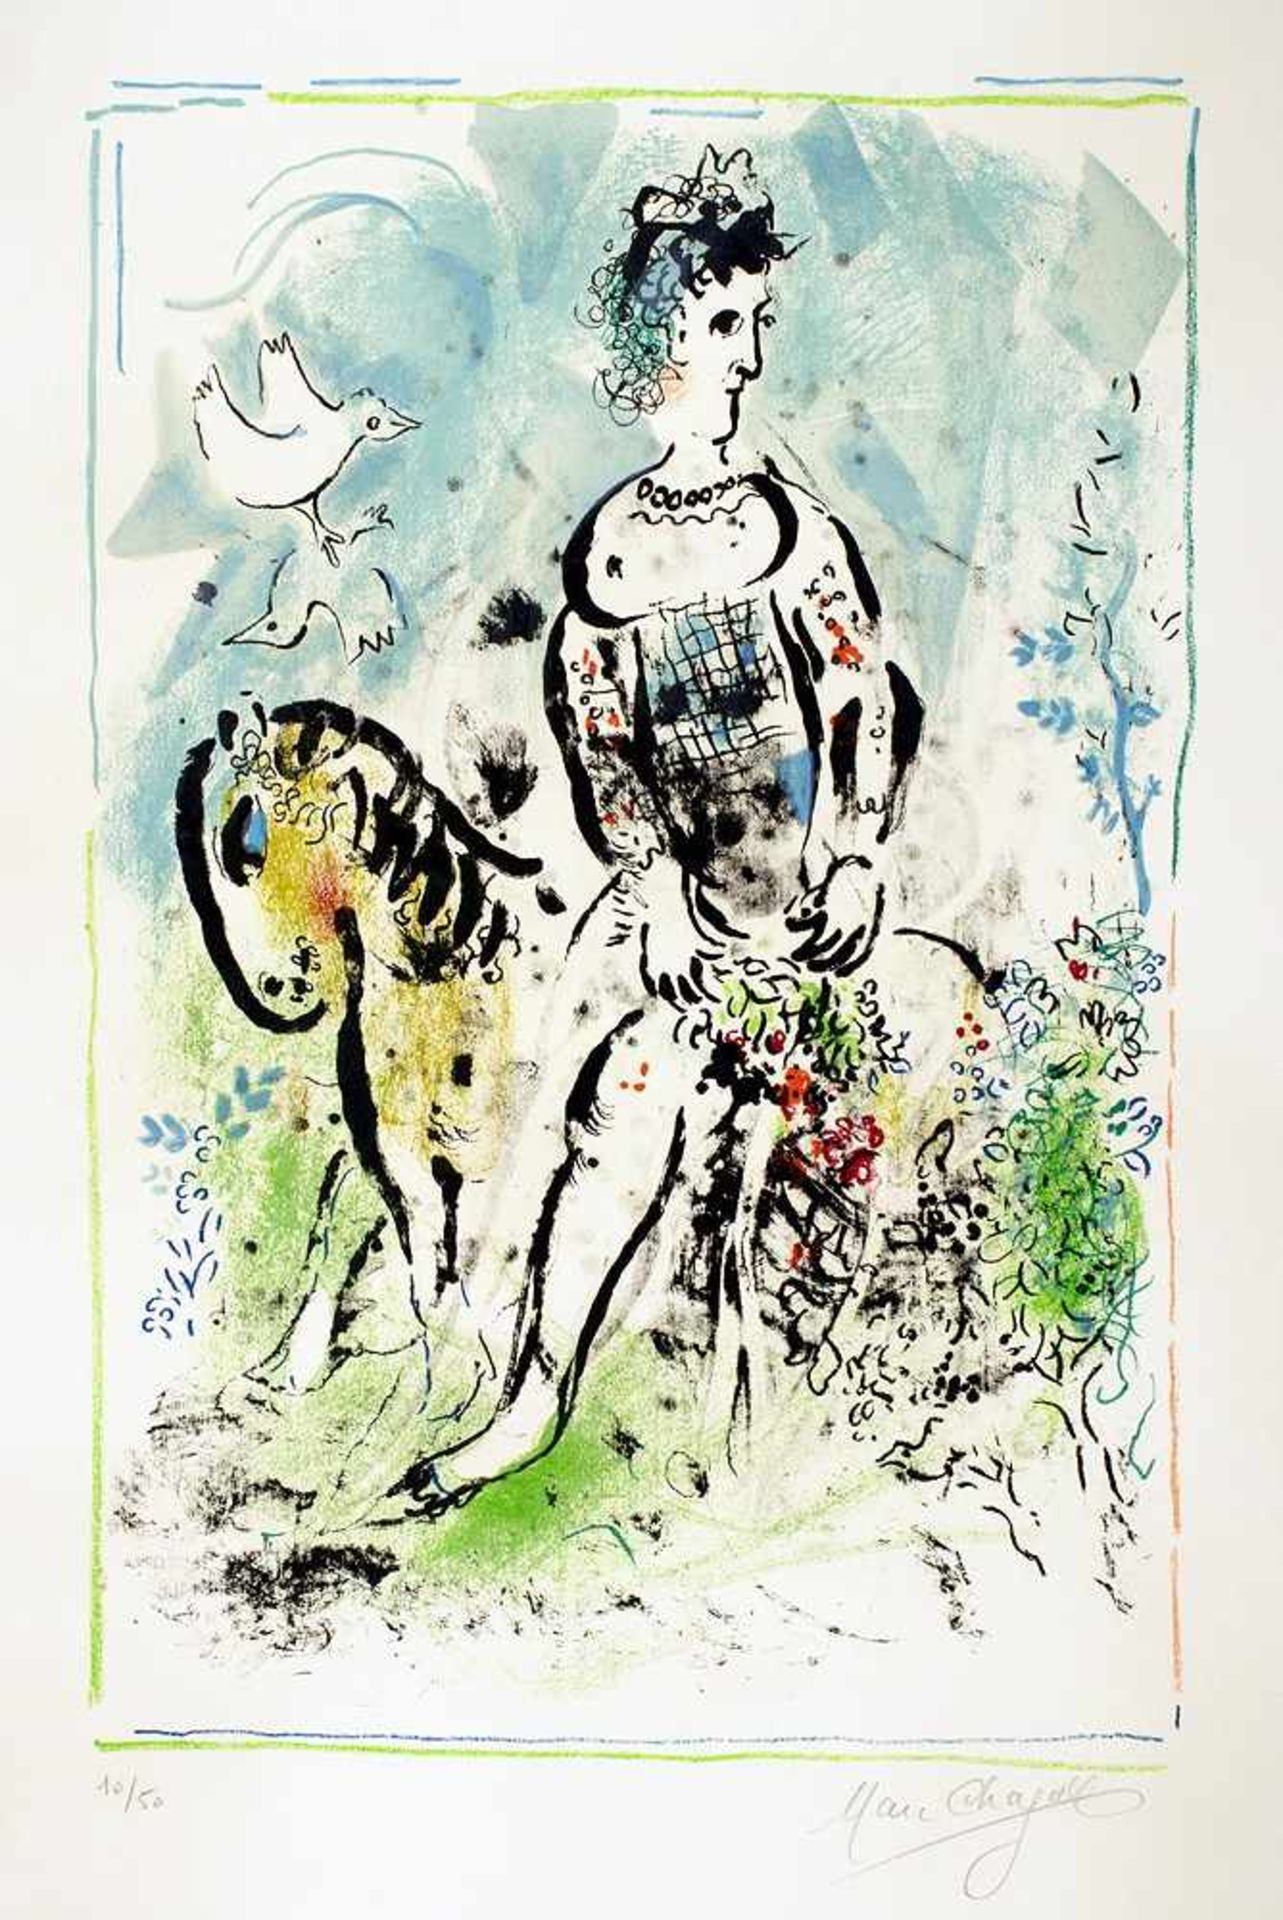 Marc Chagall. Pierrot lunaire. Farblithographie. 1969. 58,8 : 37,8 cm (76,0 : 53,5 cm). Signiert und